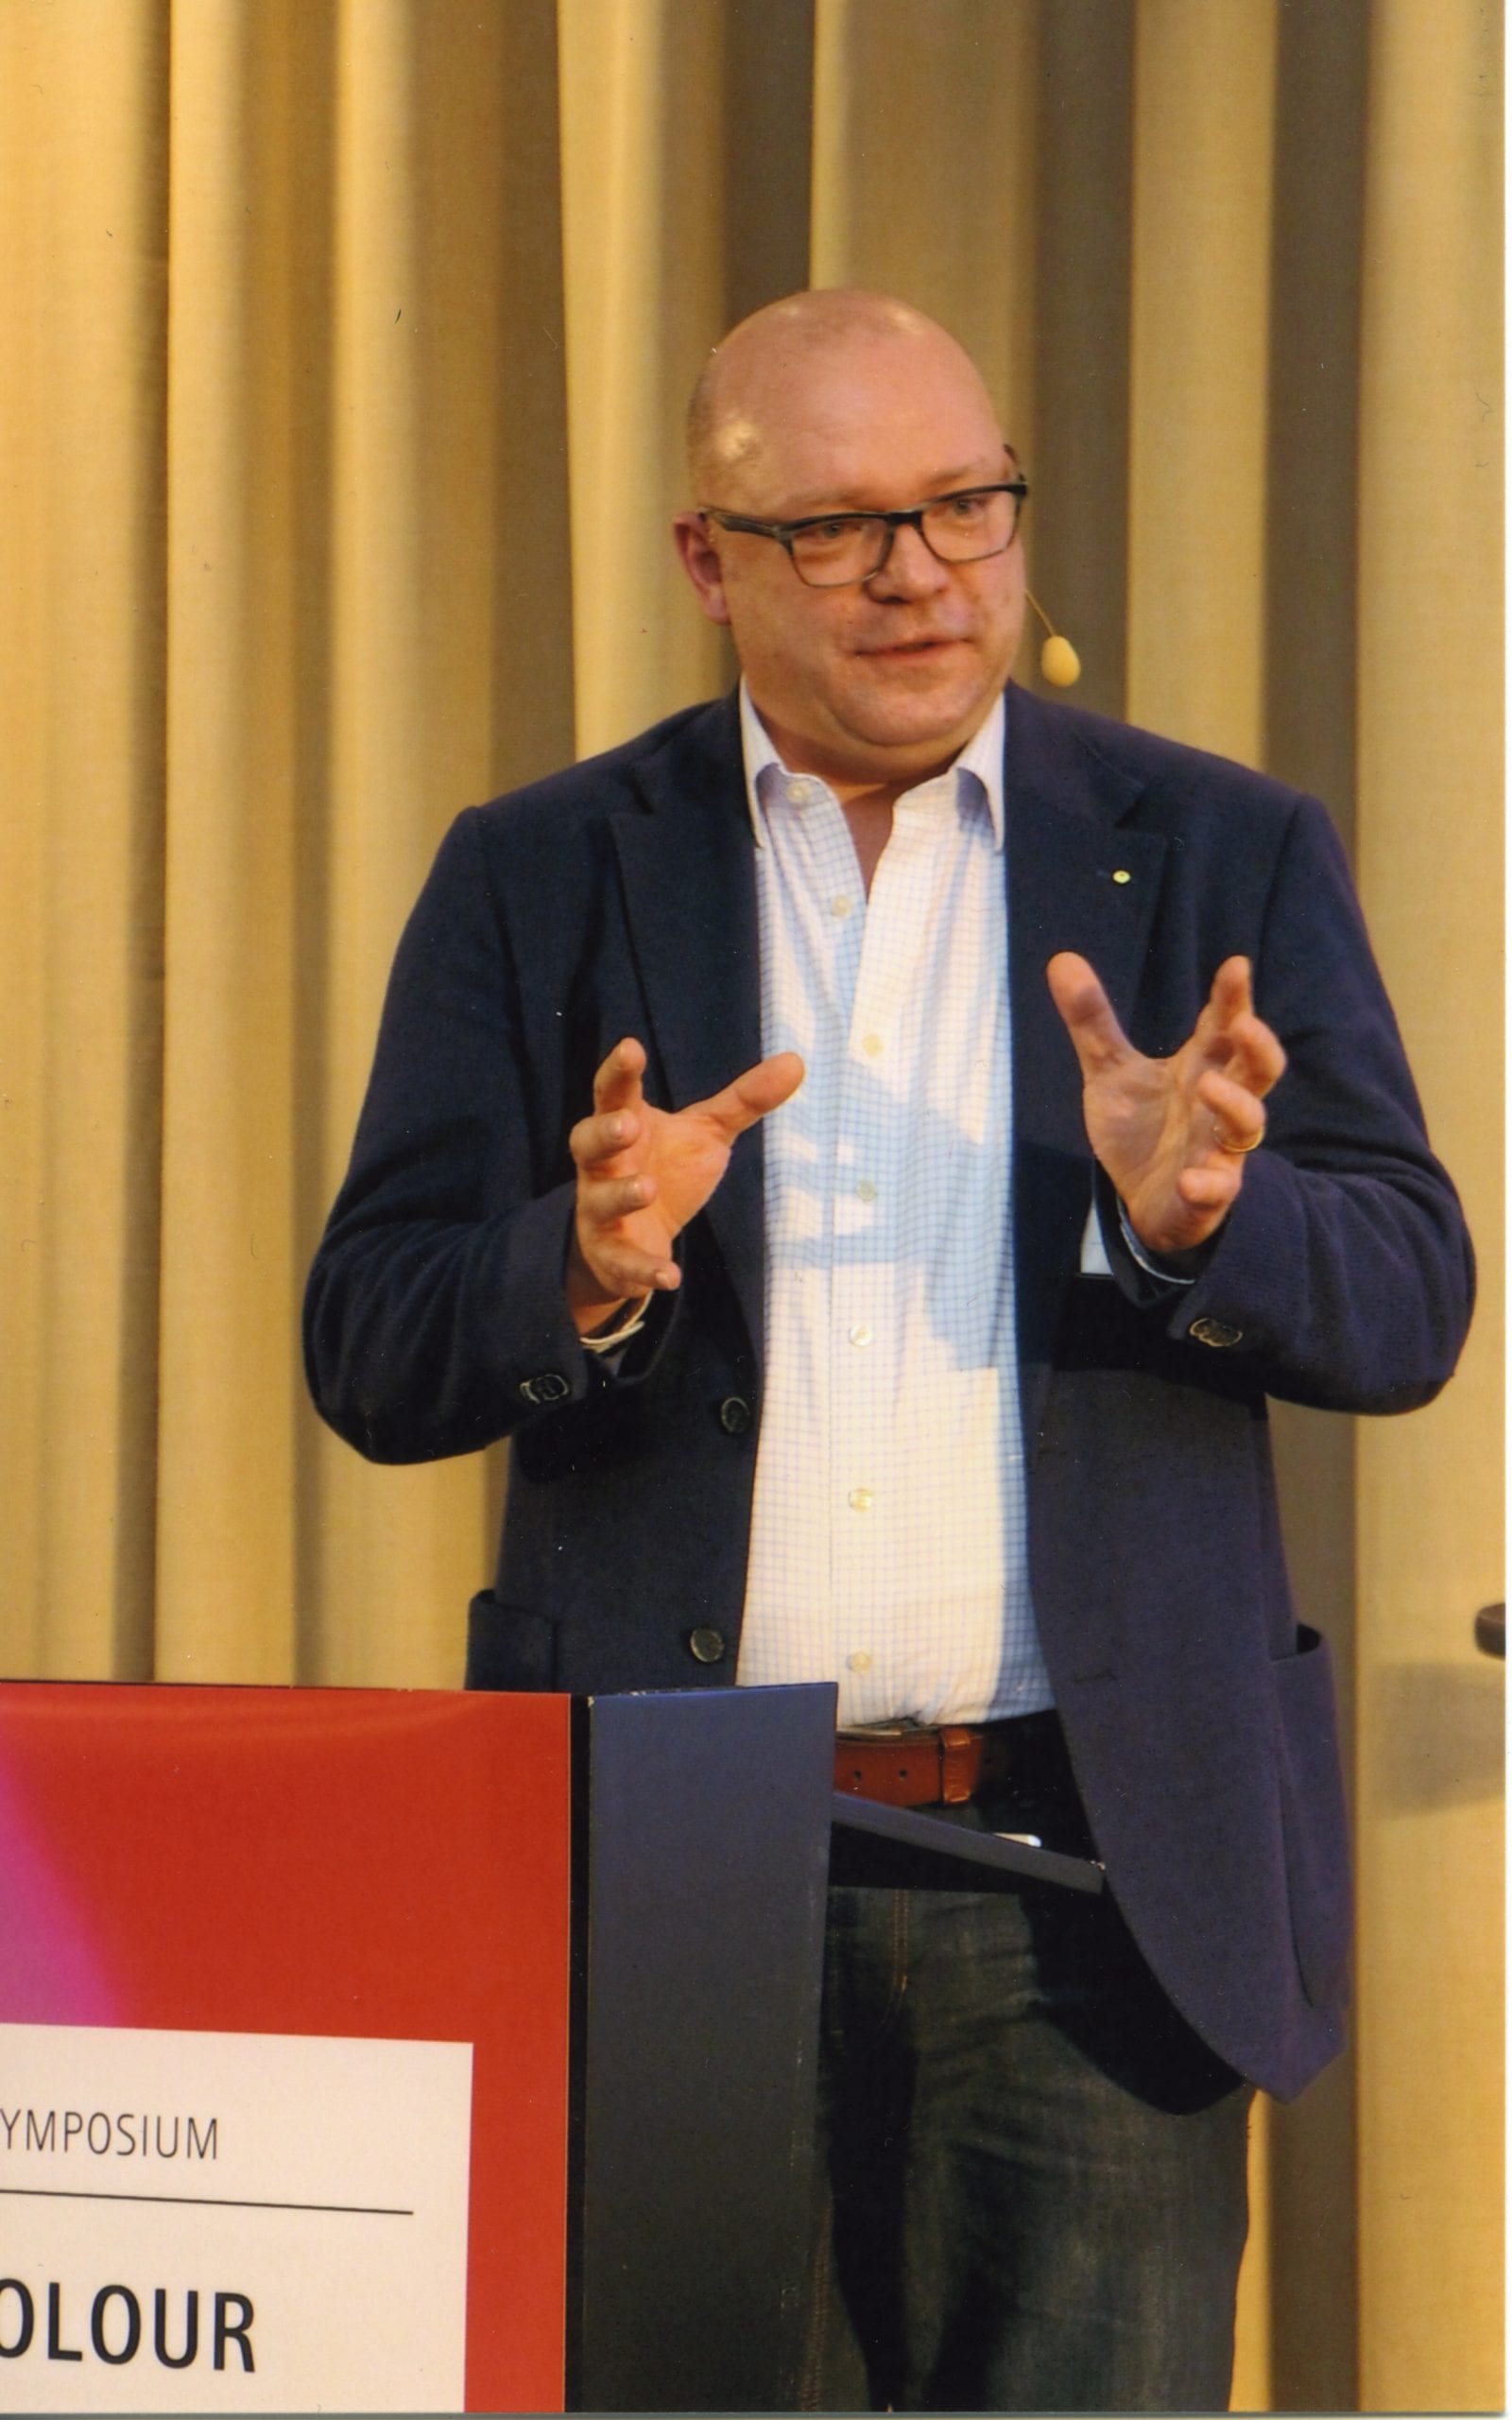 Matthias Betz lors de sa présentation au Fogra Colormanagement Symposium 2020